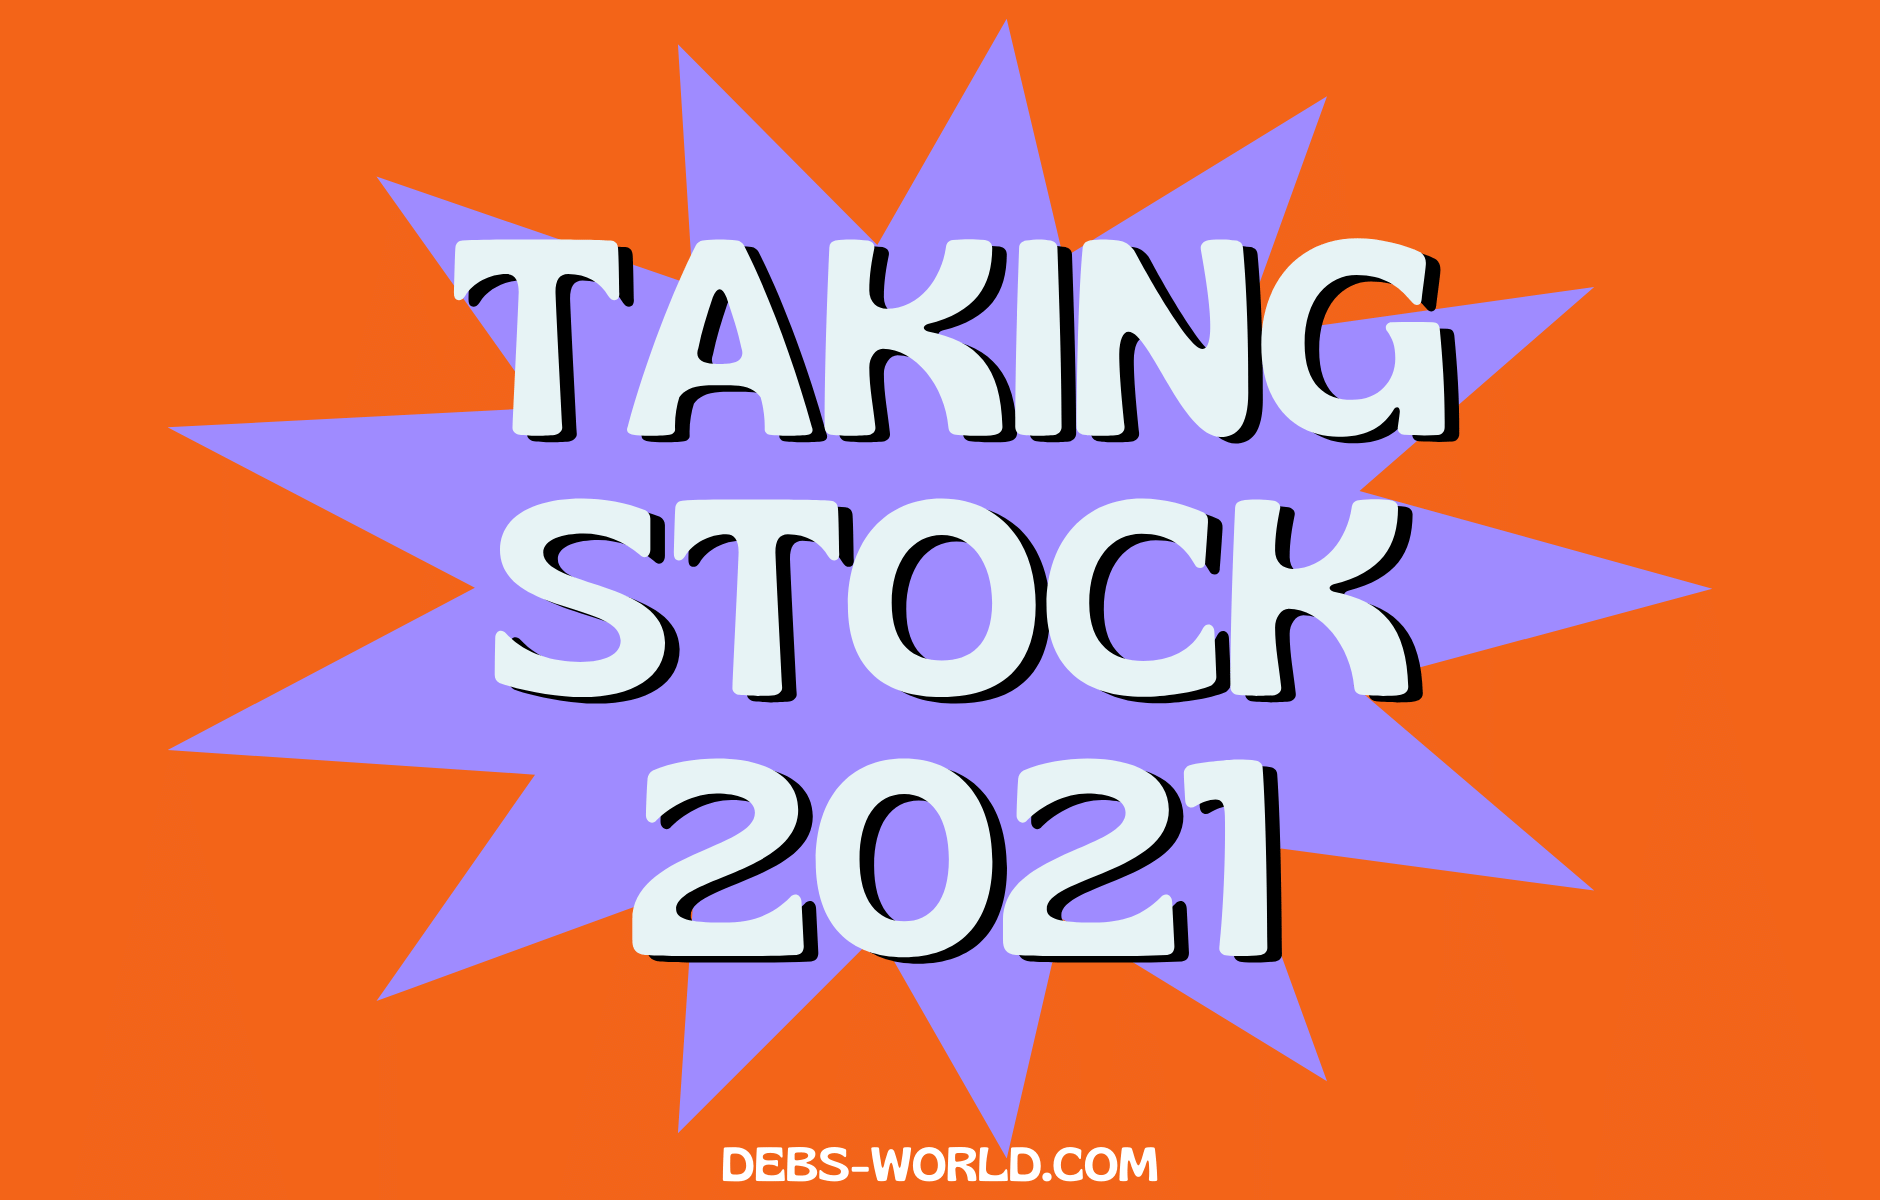 Taking Stock 2021 blog header